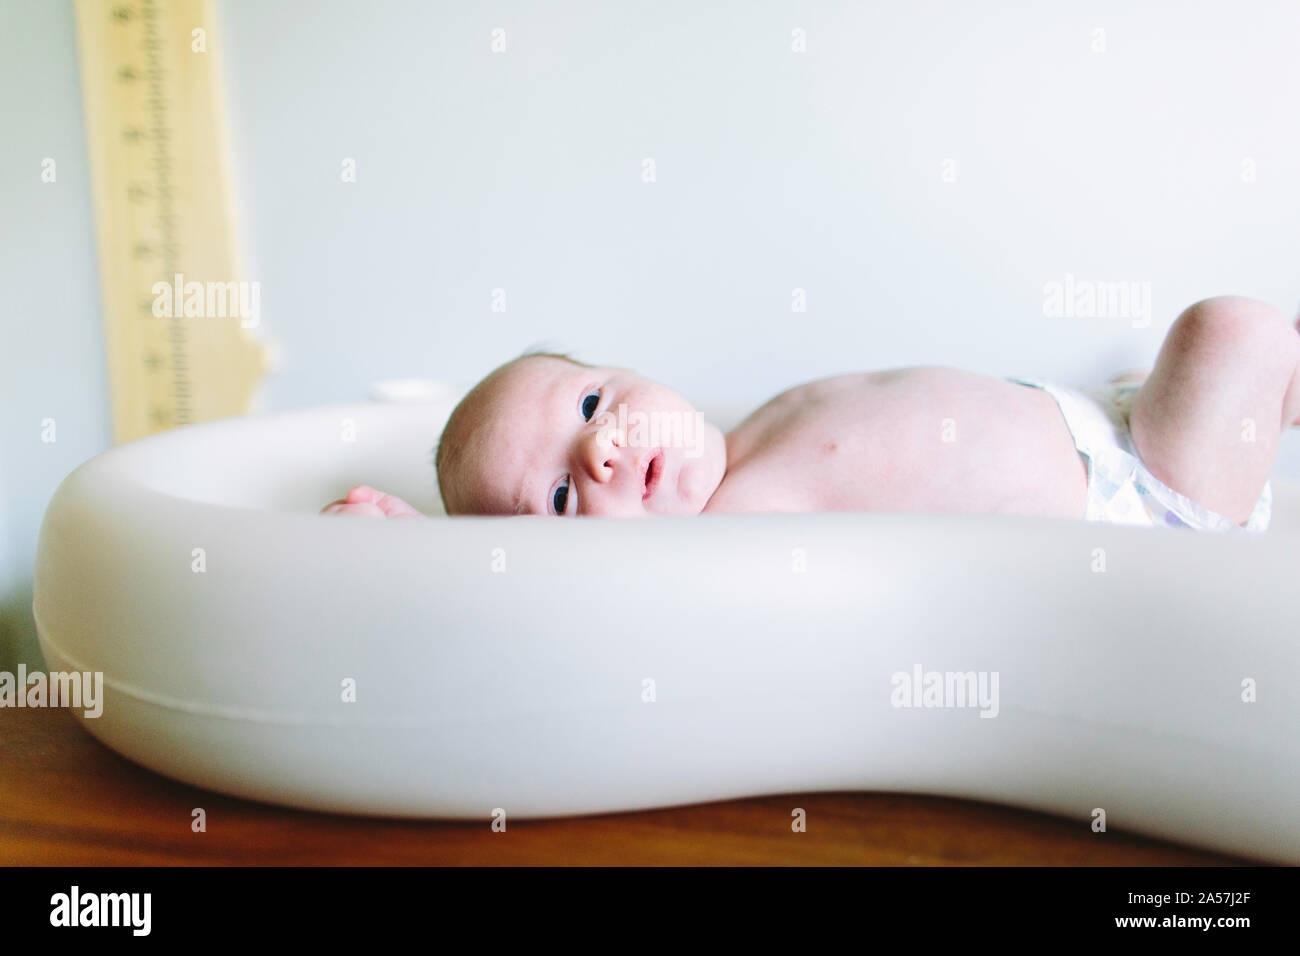 Vue latérale d'un bébé nouveau-né garçon portant sur une table à langer Banque D'Images